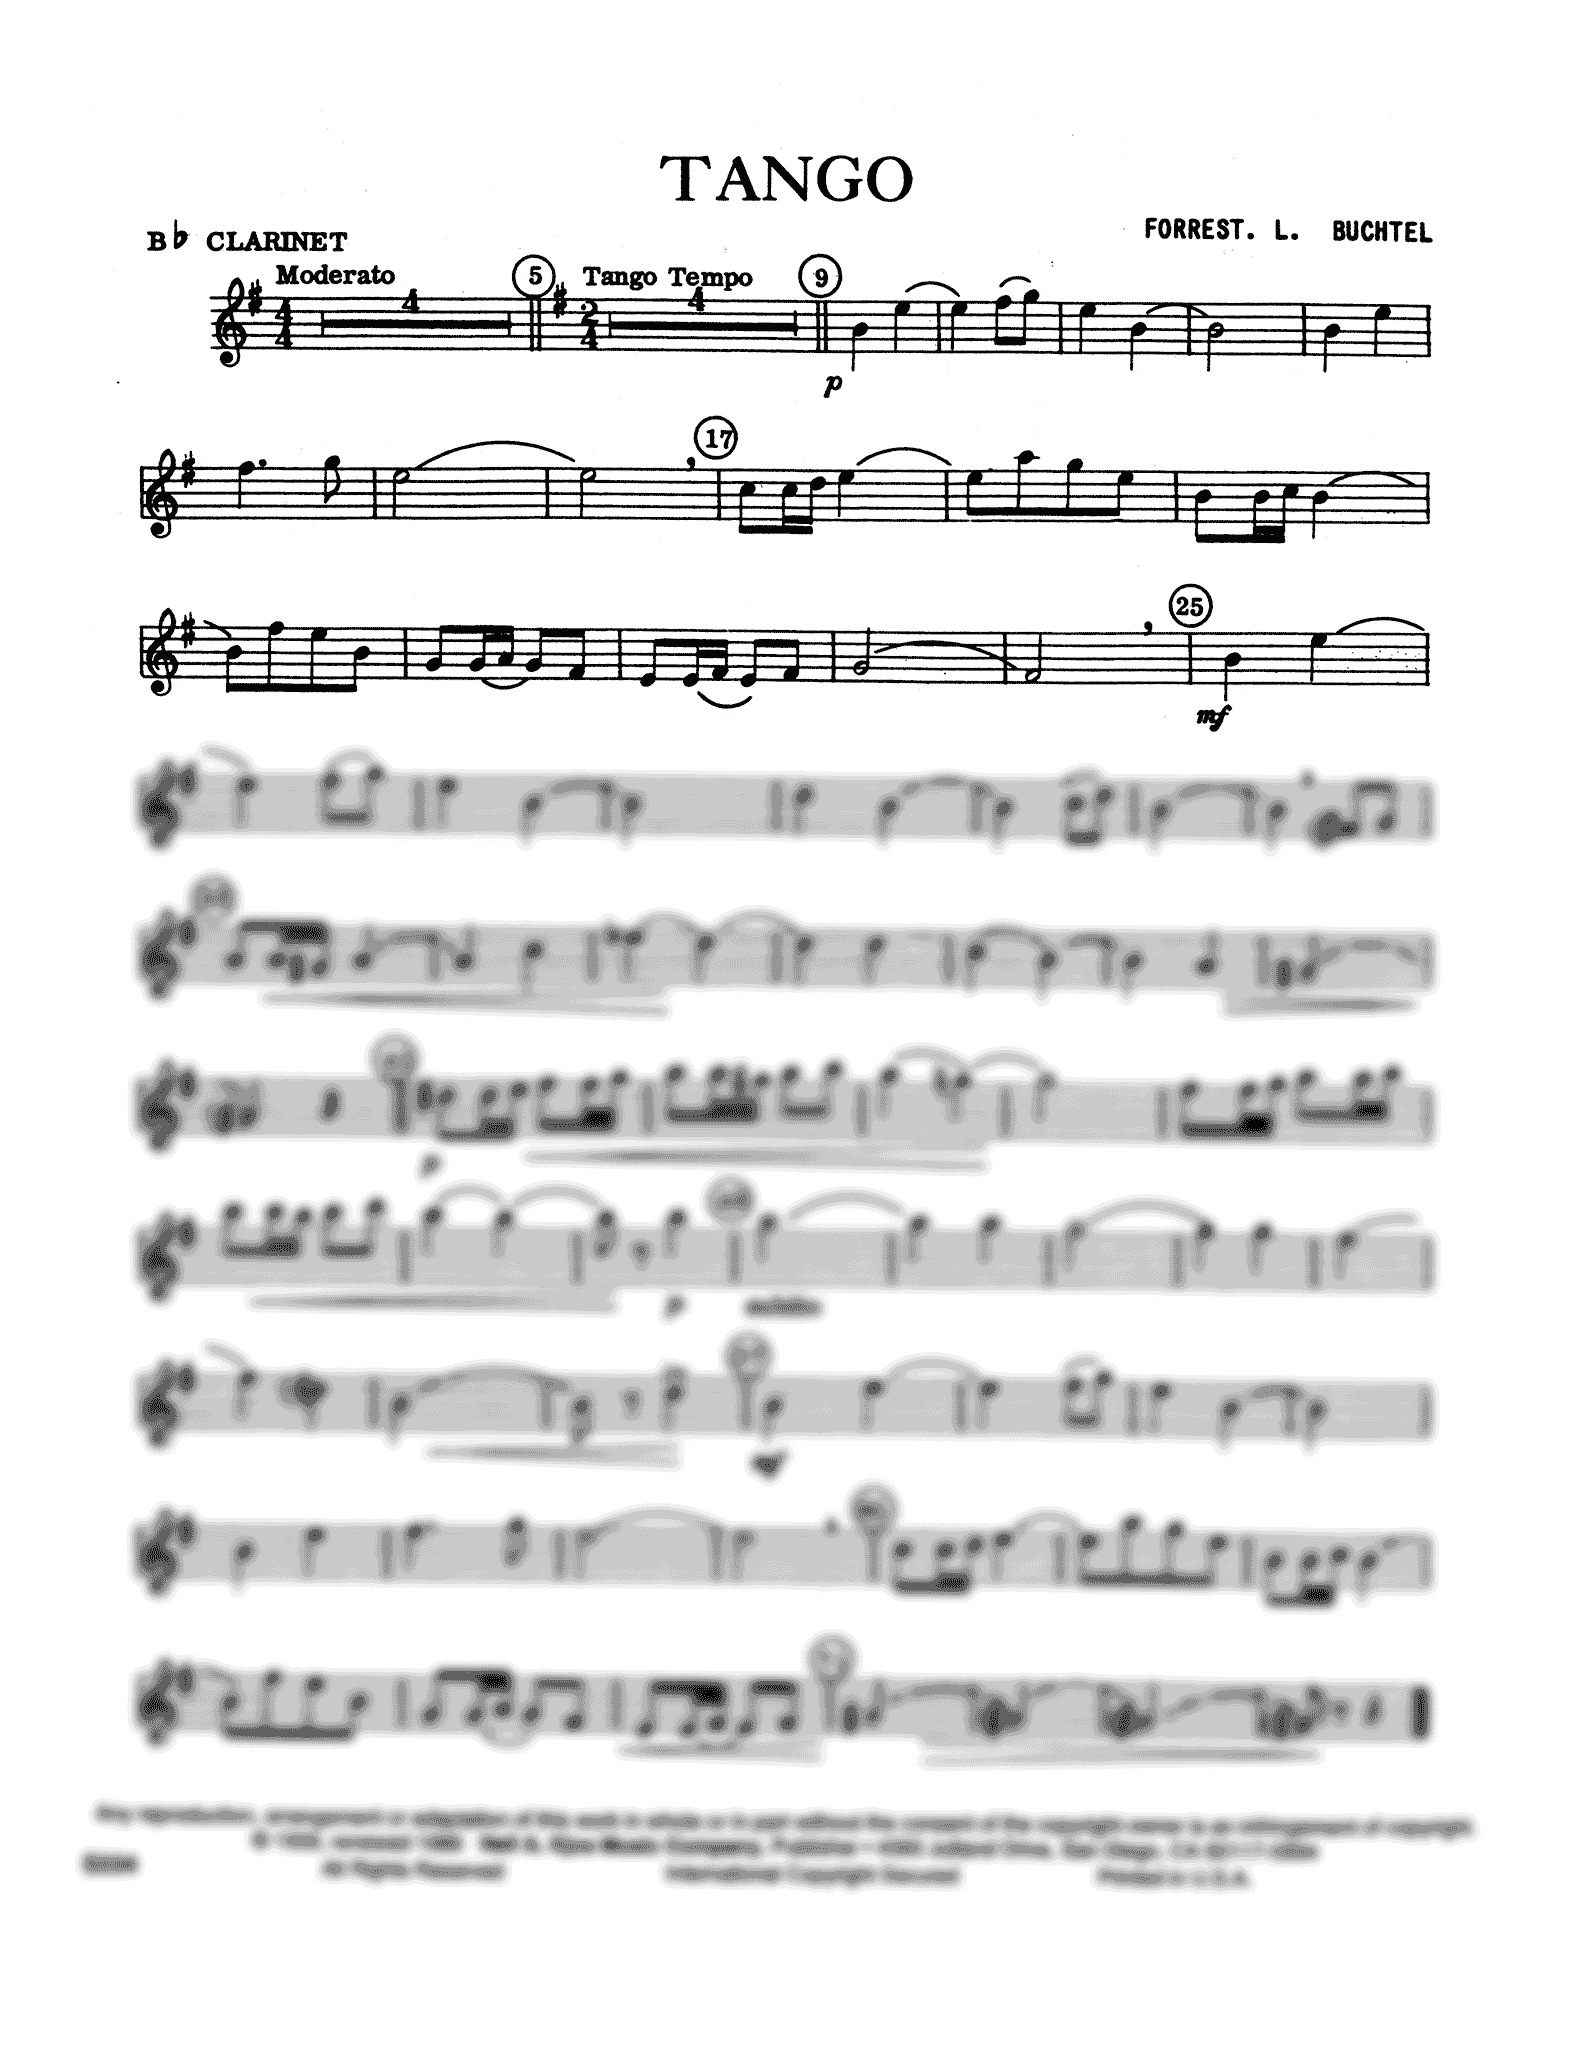 Buchtel, Forrest Tango clarinet part